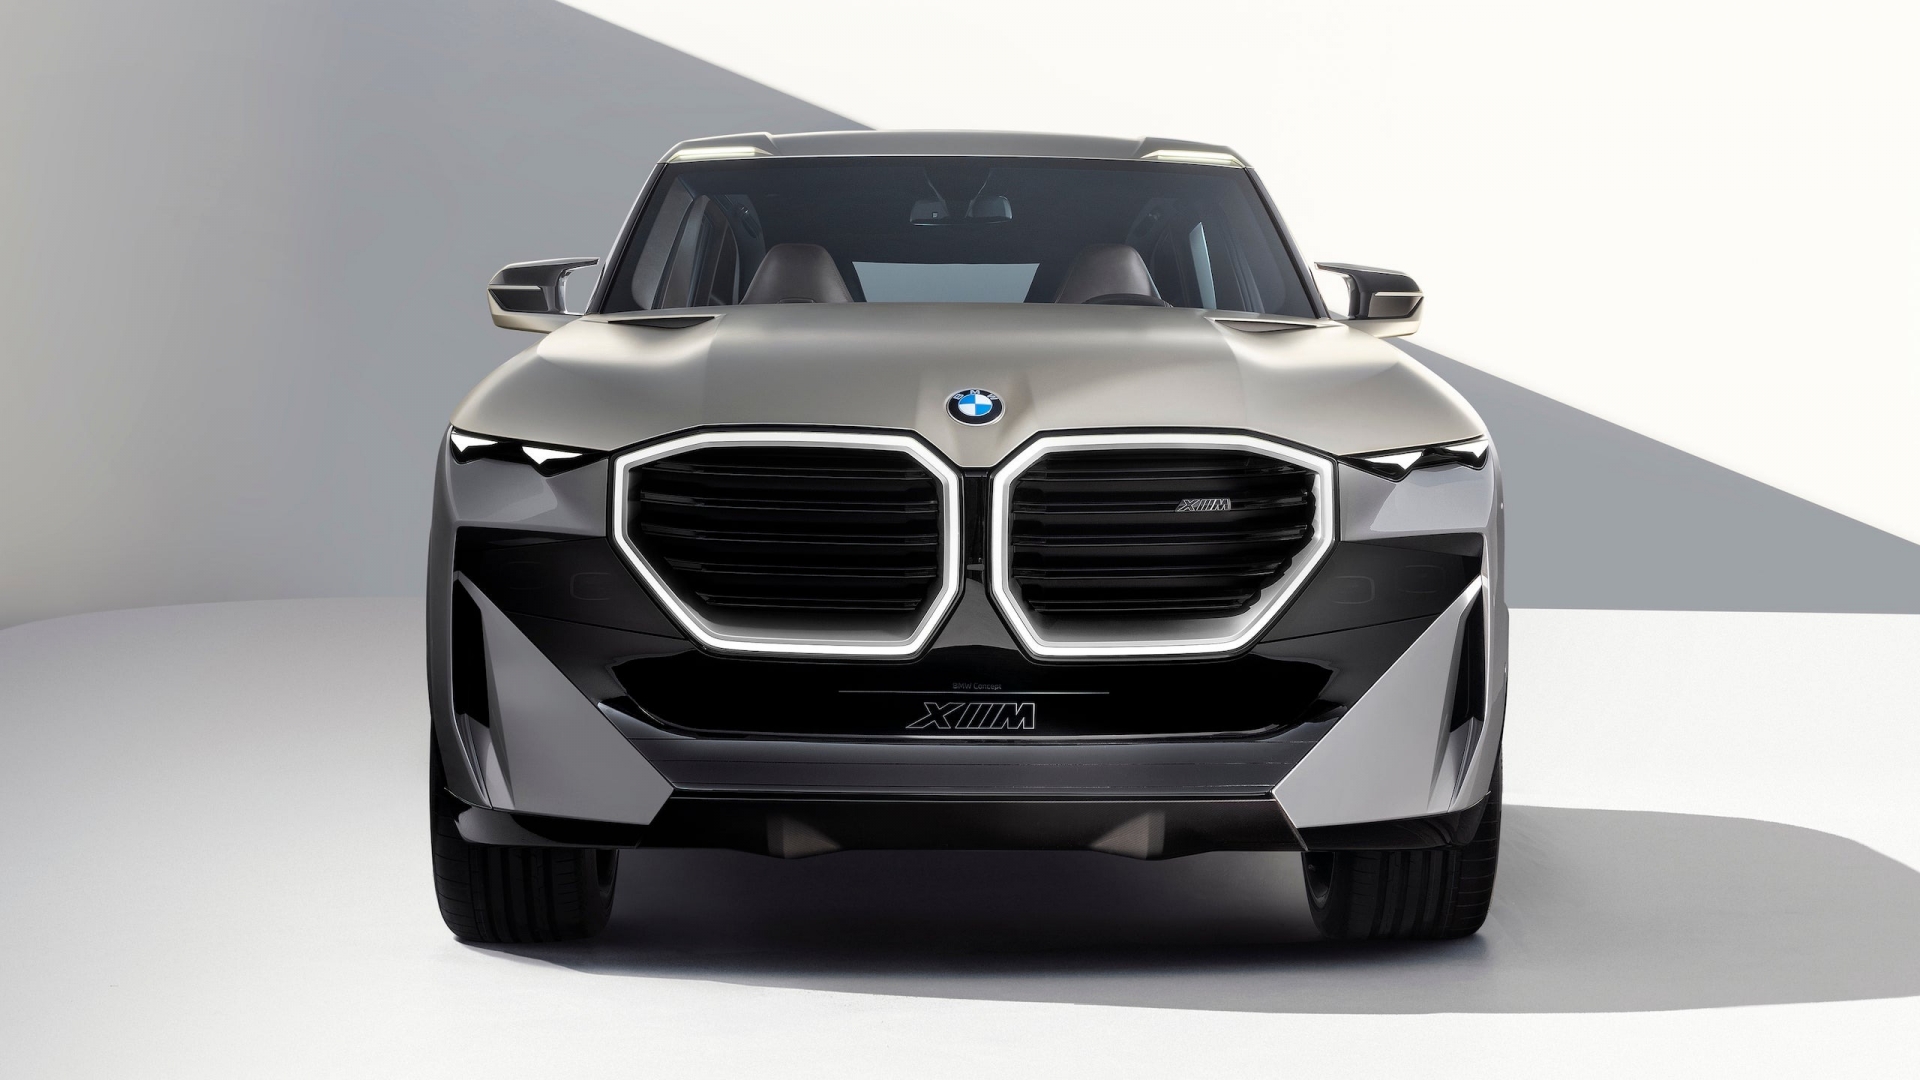 Thiết kế quả thận đặc trưng của xe BMW nhưng với kích thước khác thường